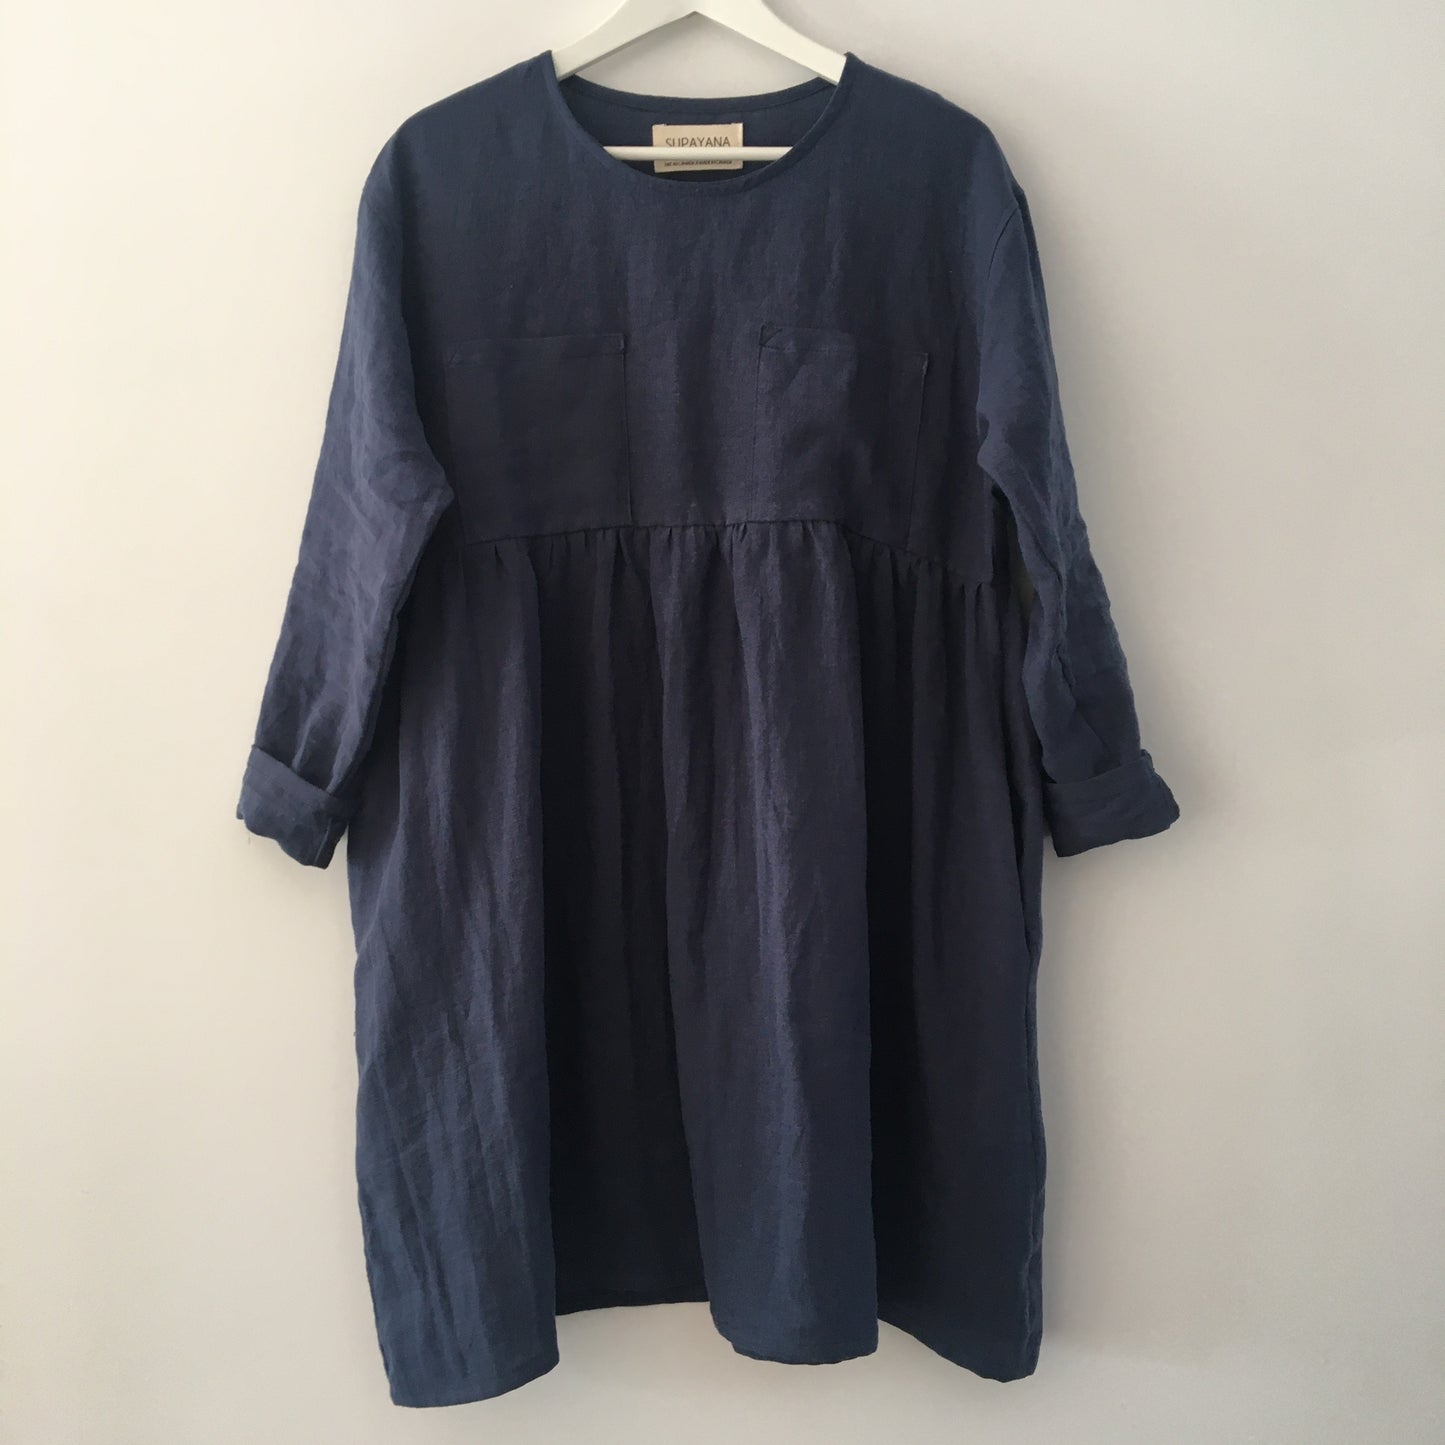 Linen pocket dress - Dark indigo